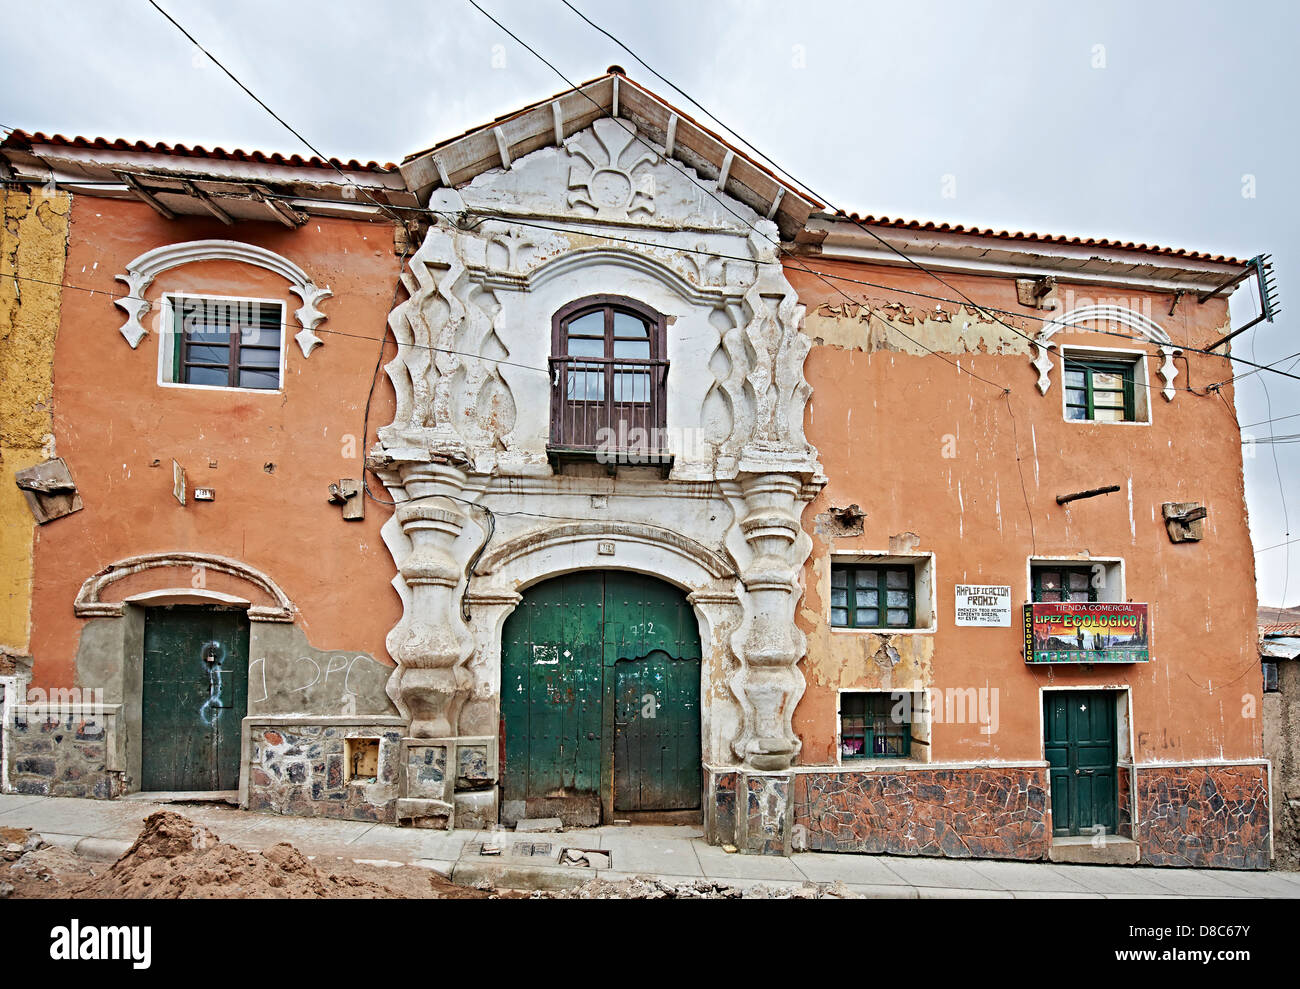 Colonial architecture in Potosi, Bolivia Stock Photo